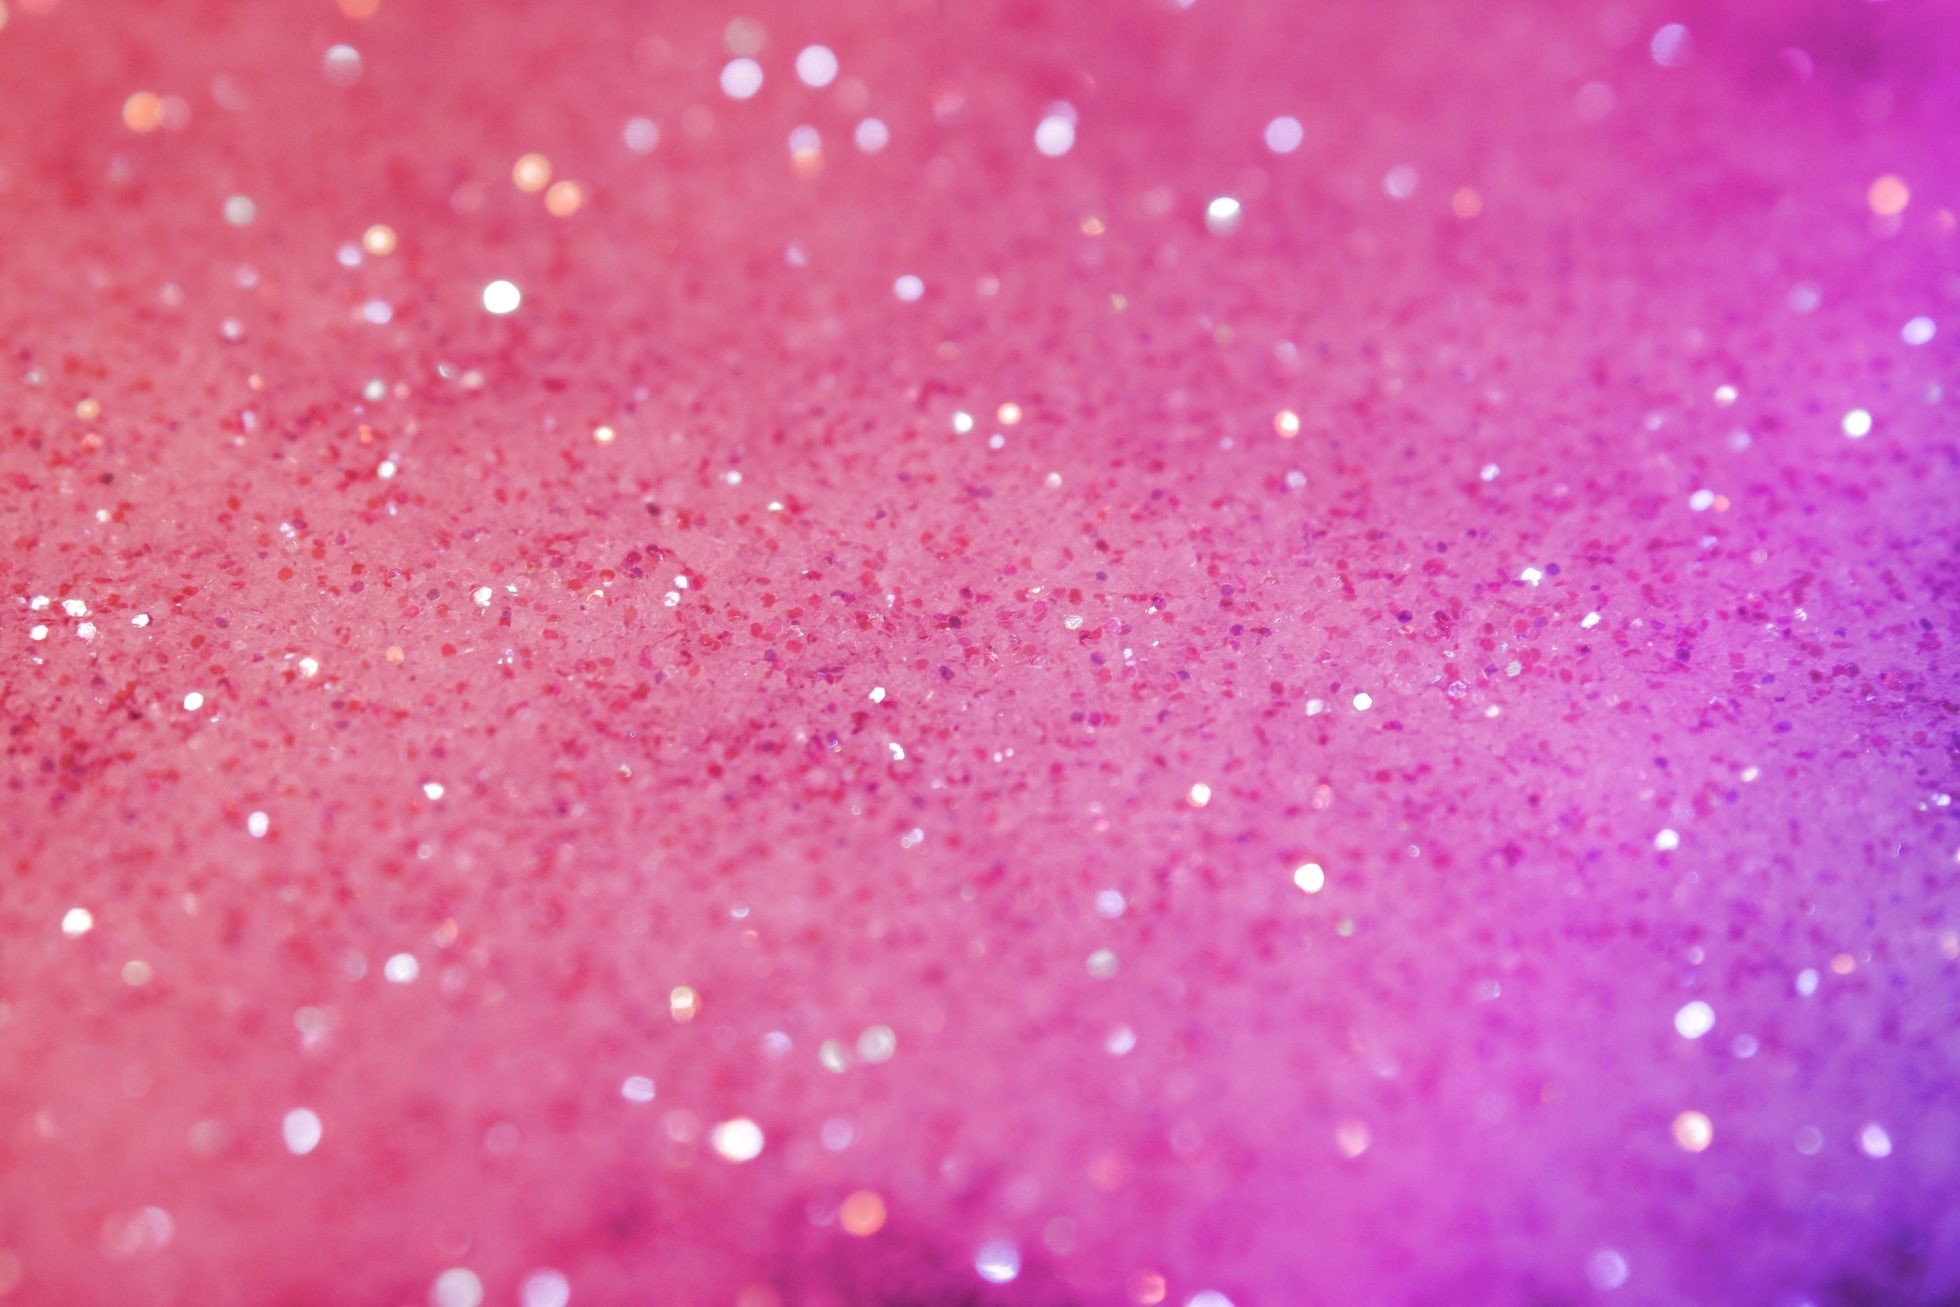 1960x1307 Pretty Pink Wallpaper For Desktop  px, #CJ58HI8